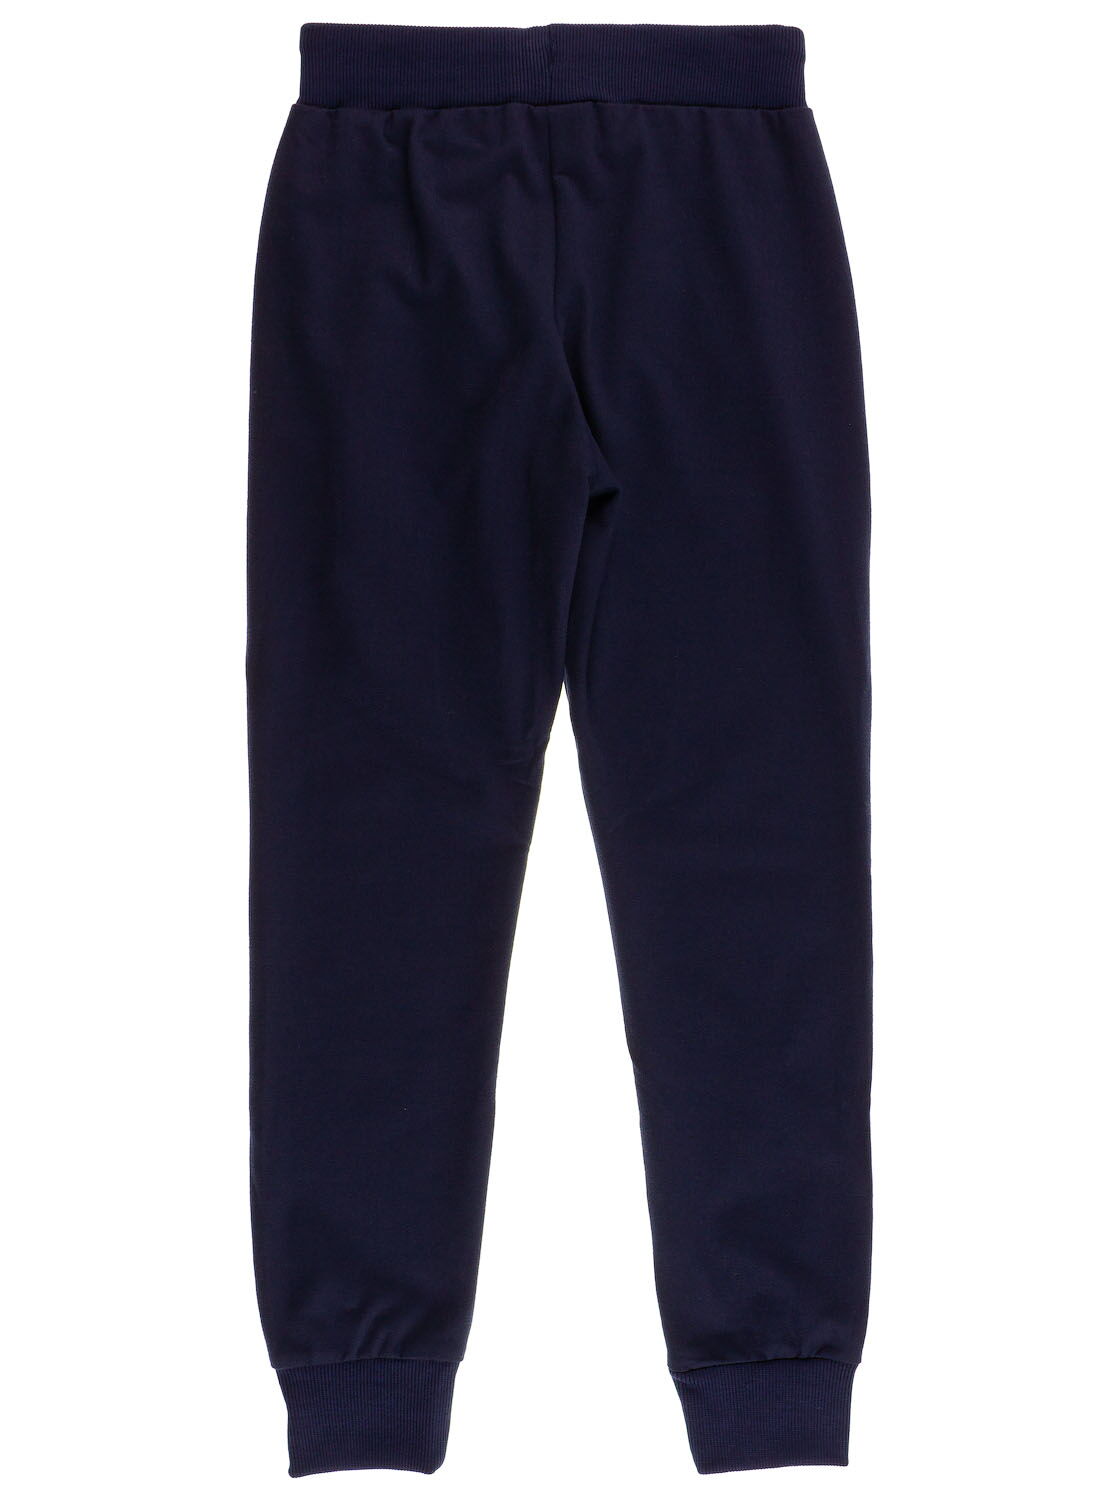 Спортивные штаны для мальчика Sincere синие 2314 - фото